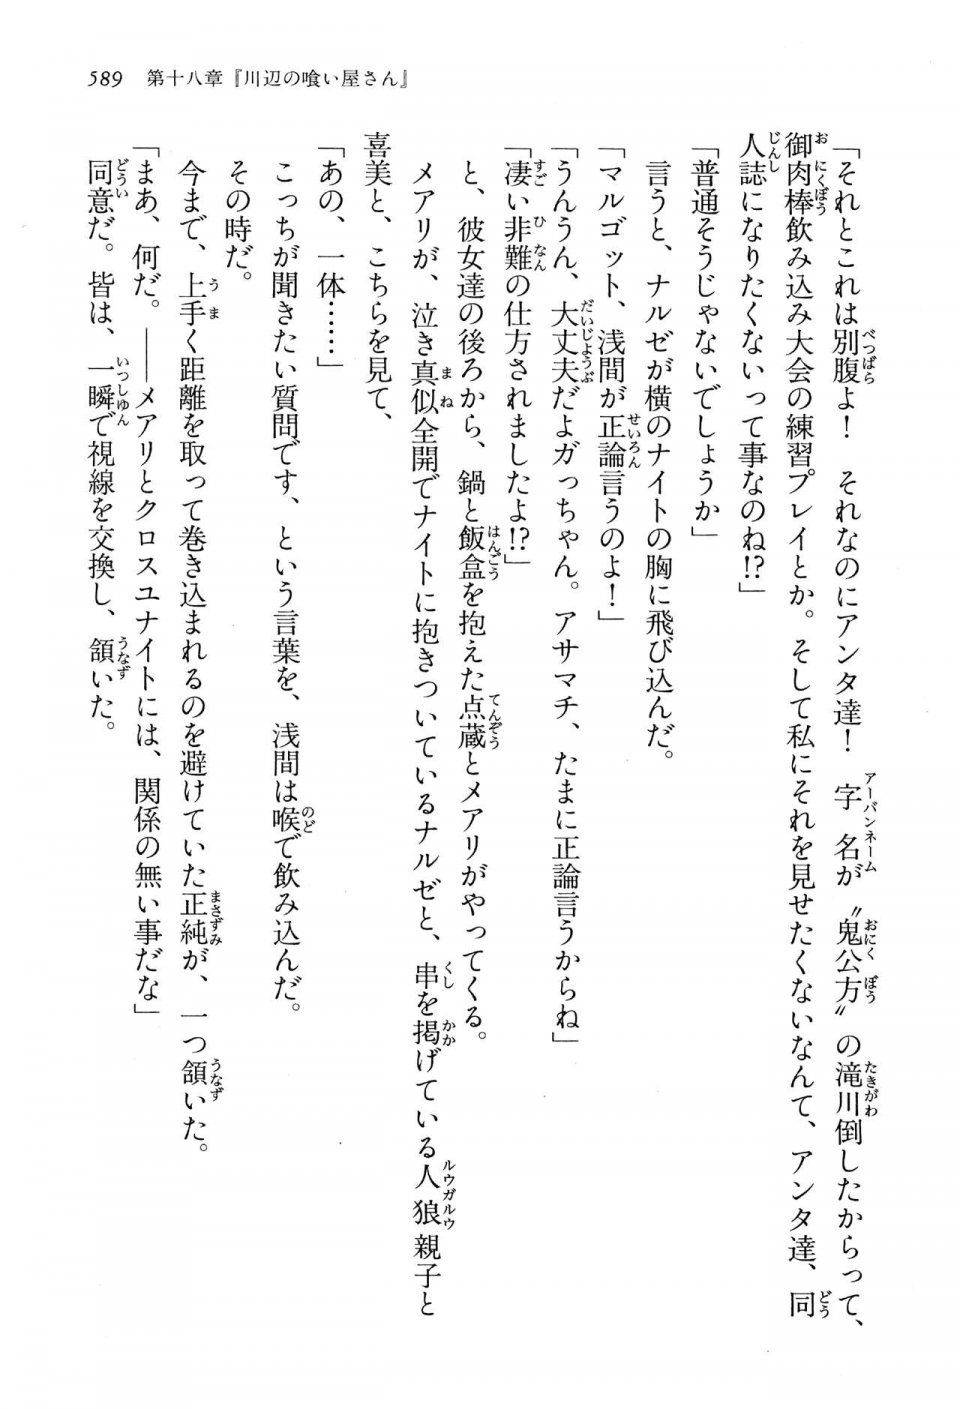 Kyoukai Senjou no Horizon LN Vol 13(6A) - Photo #589